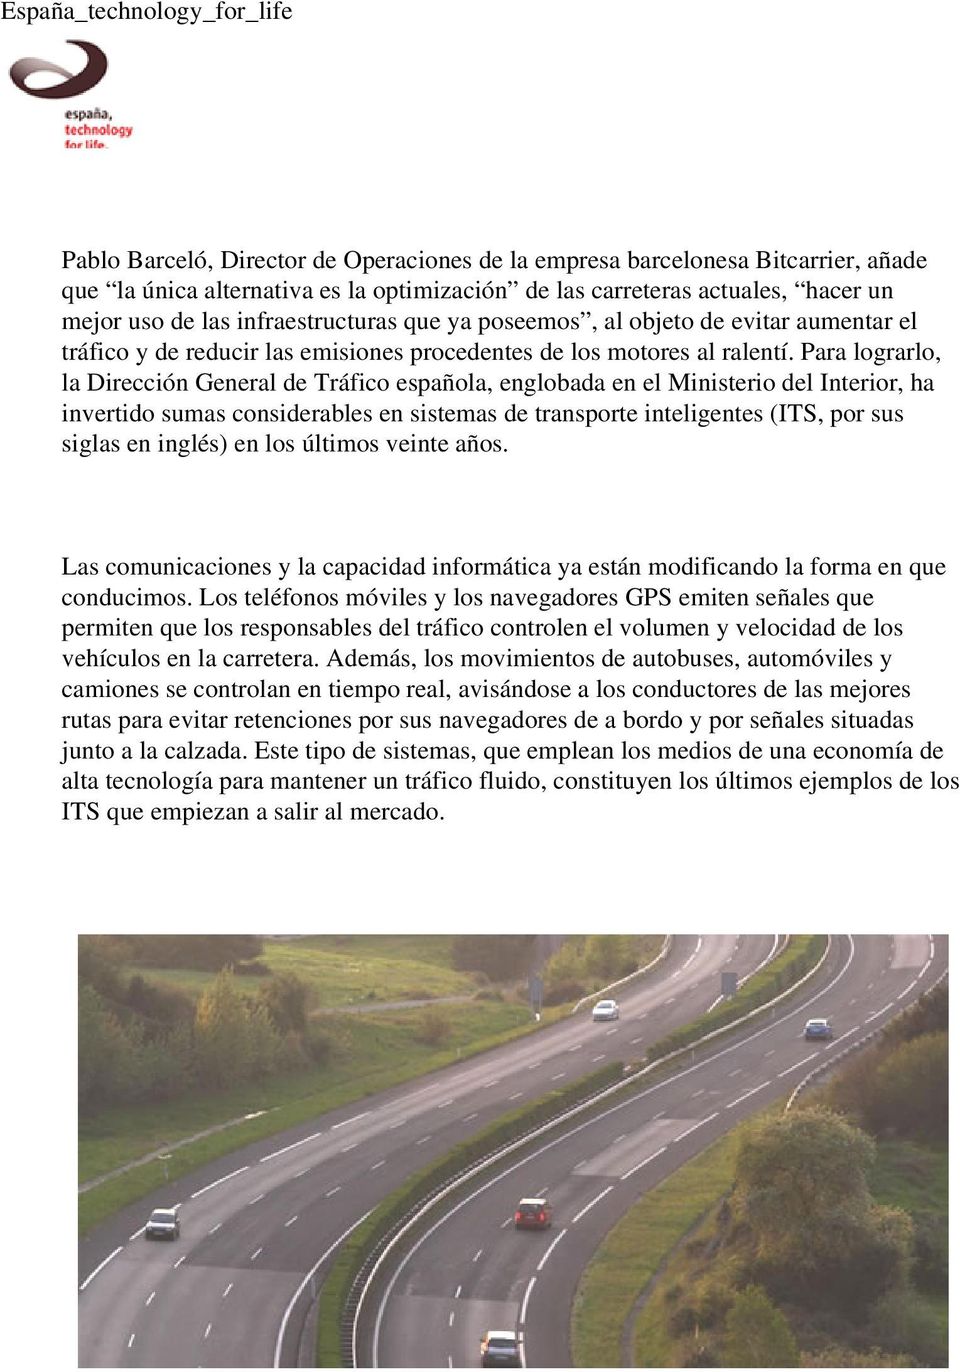 Para lograrlo, la Dirección General de Tráfico española, englobada en el Ministerio del Interior, ha invertido sumas considerables en sistemas de transporte inteligentes (ITS, por sus siglas en